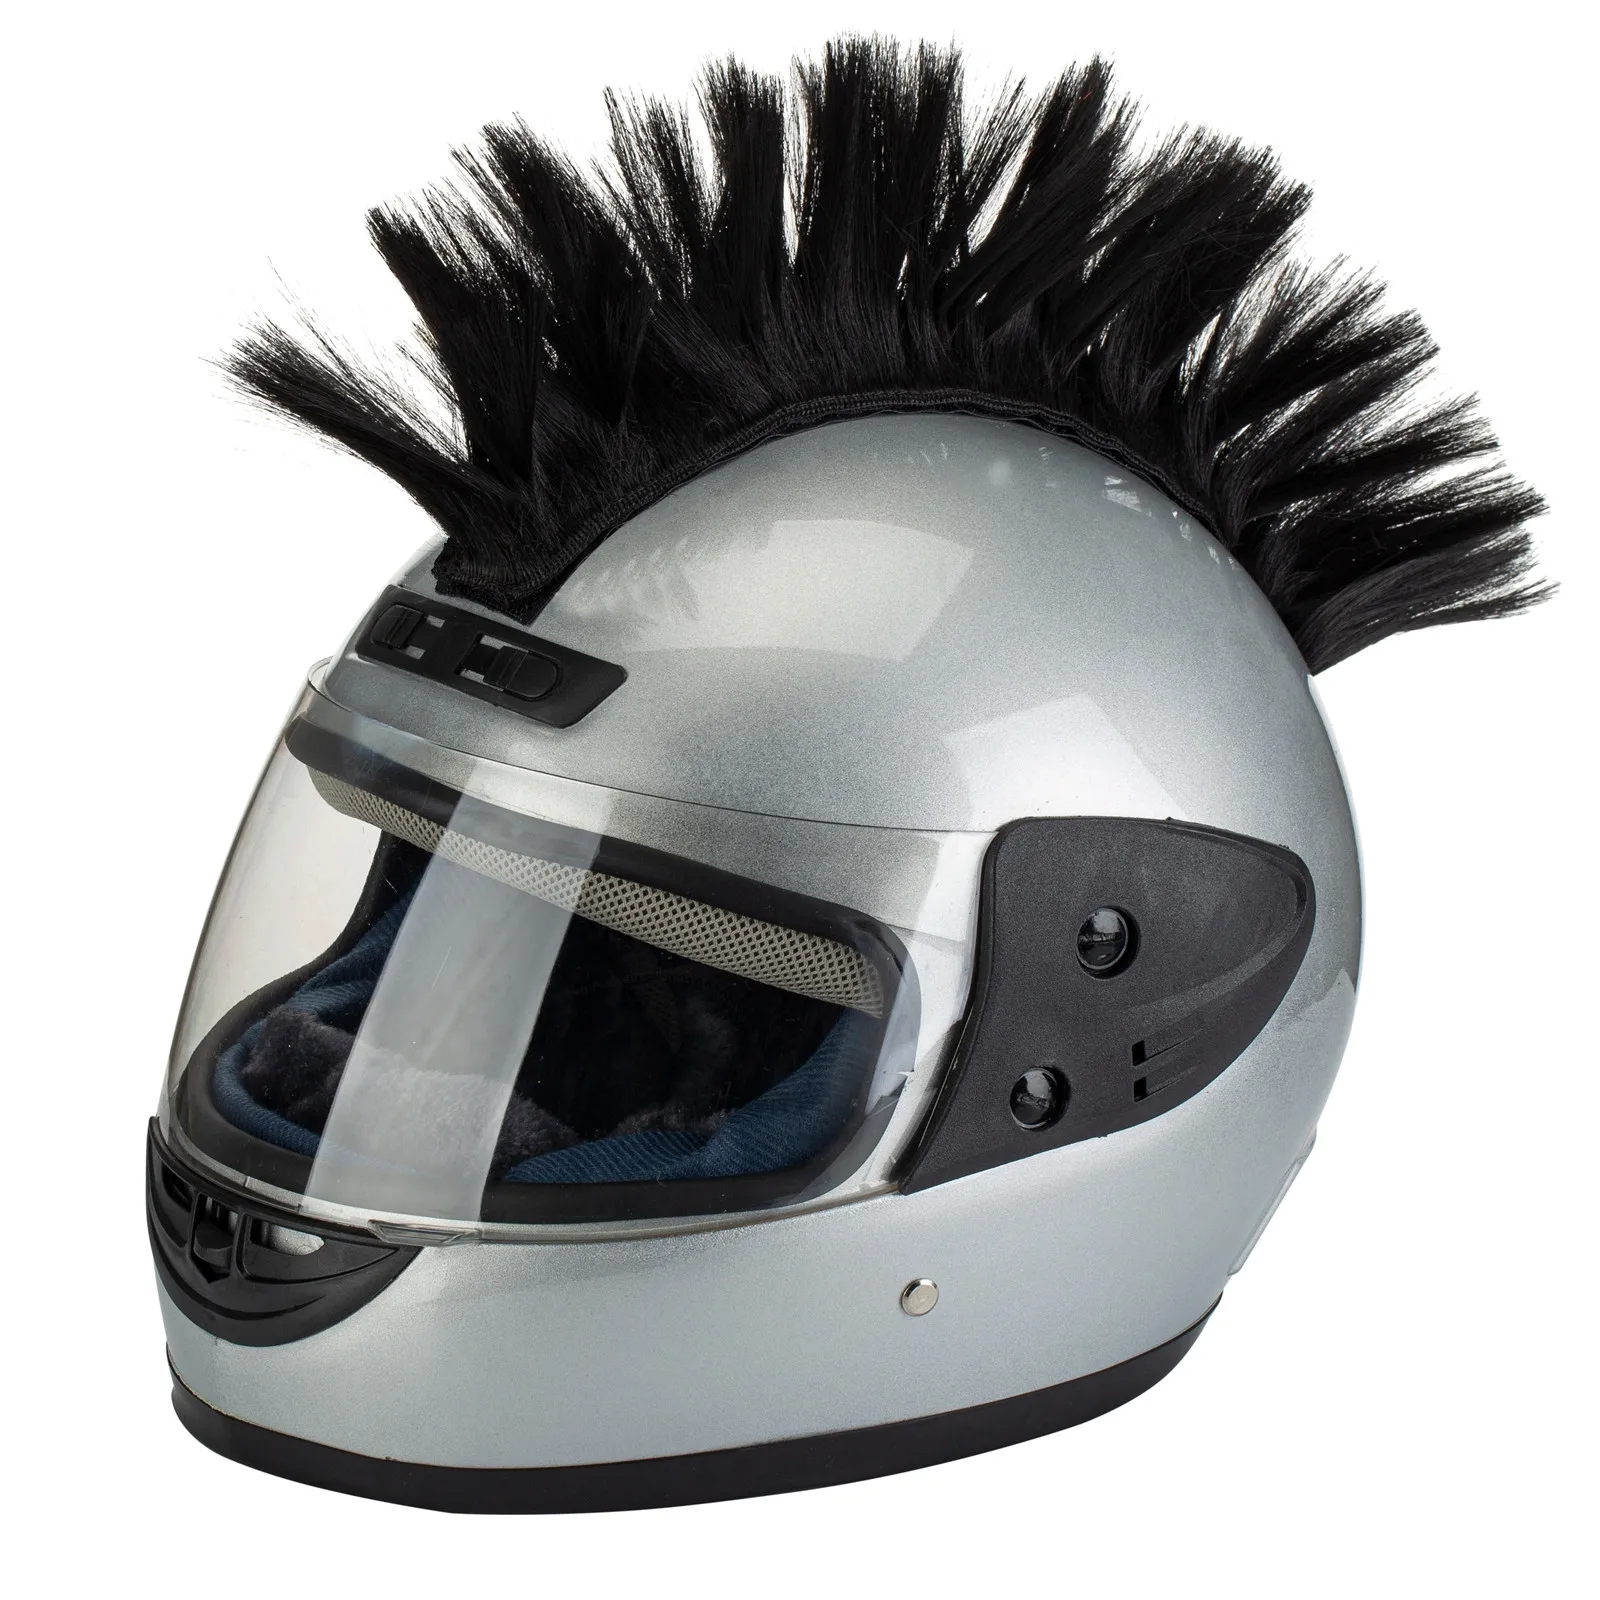 

Шлем парик-могавк парик волосы-Патчи шиньон для велосипеда мотоцикла скутера поло лыжи сноуборда Косплей Костюм